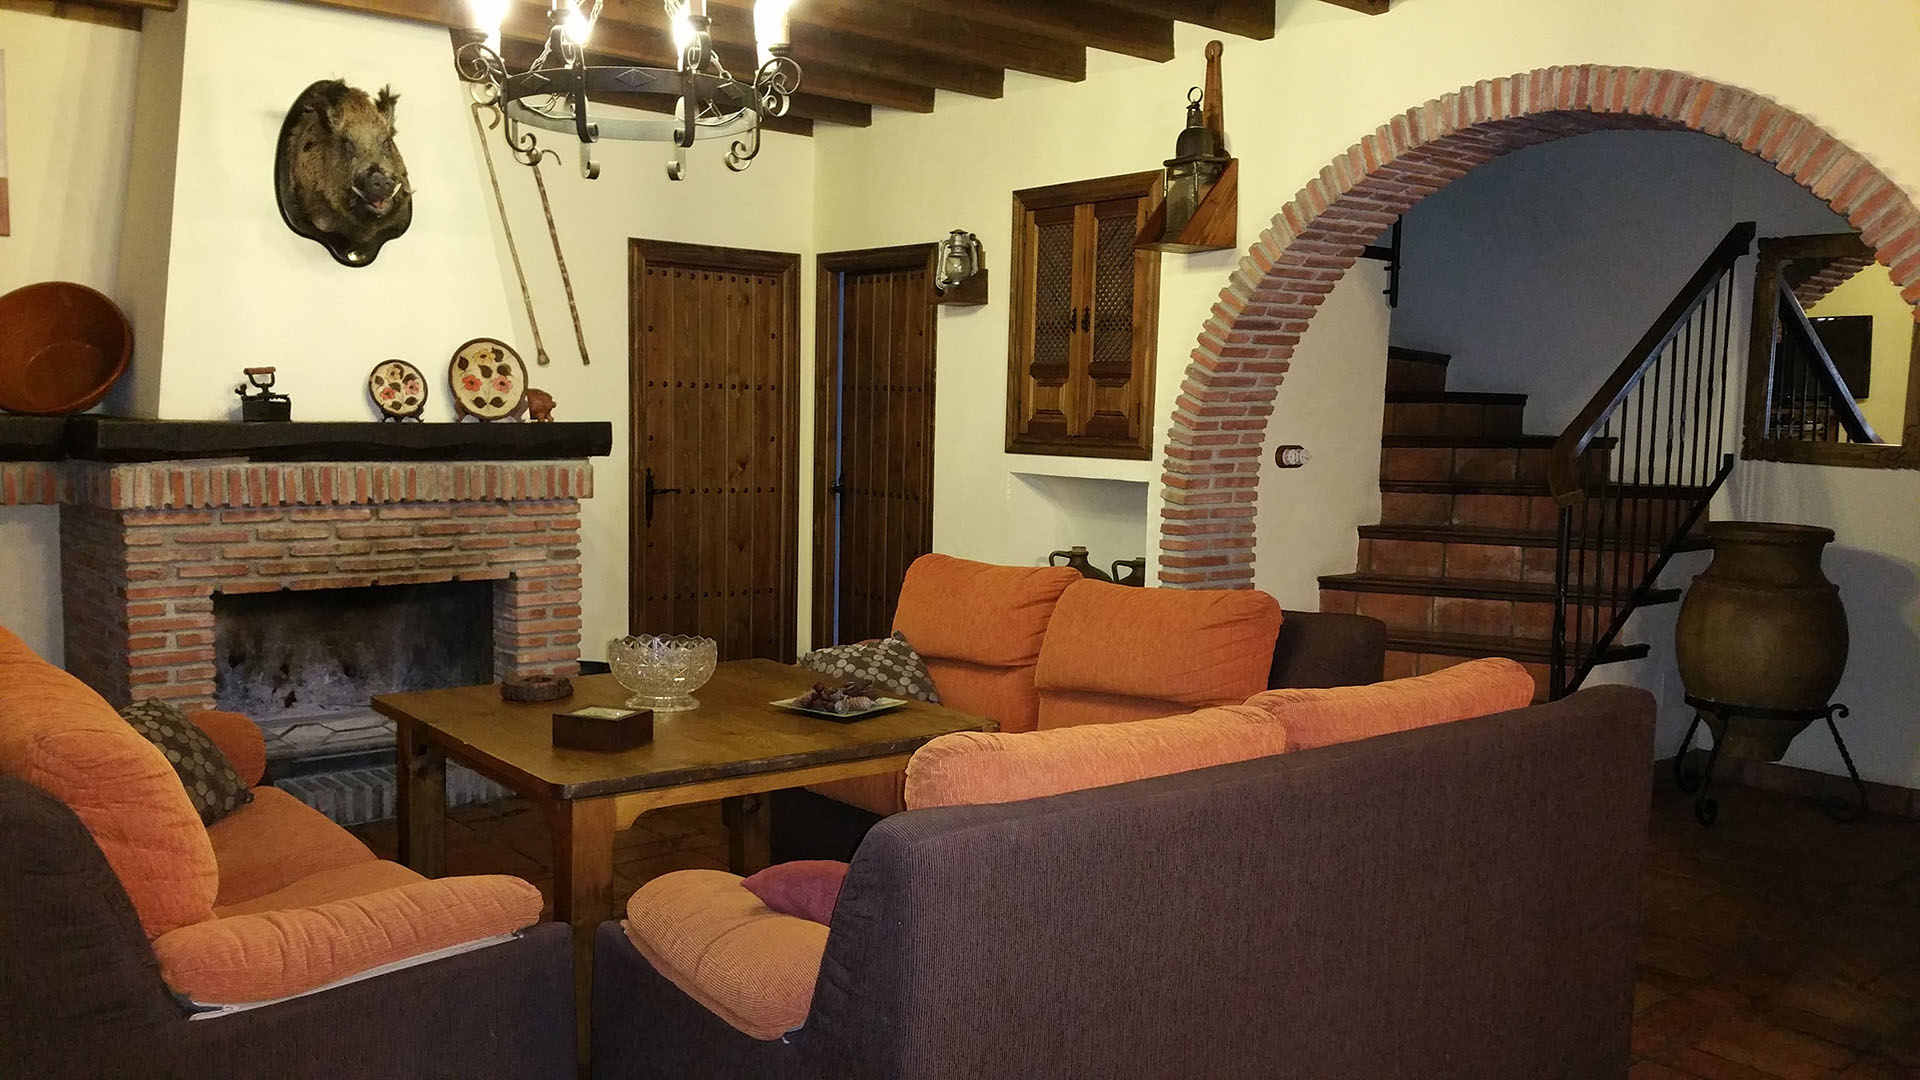 salón con decoración rustica con chimenea al fondo y zona de relax con sofá.